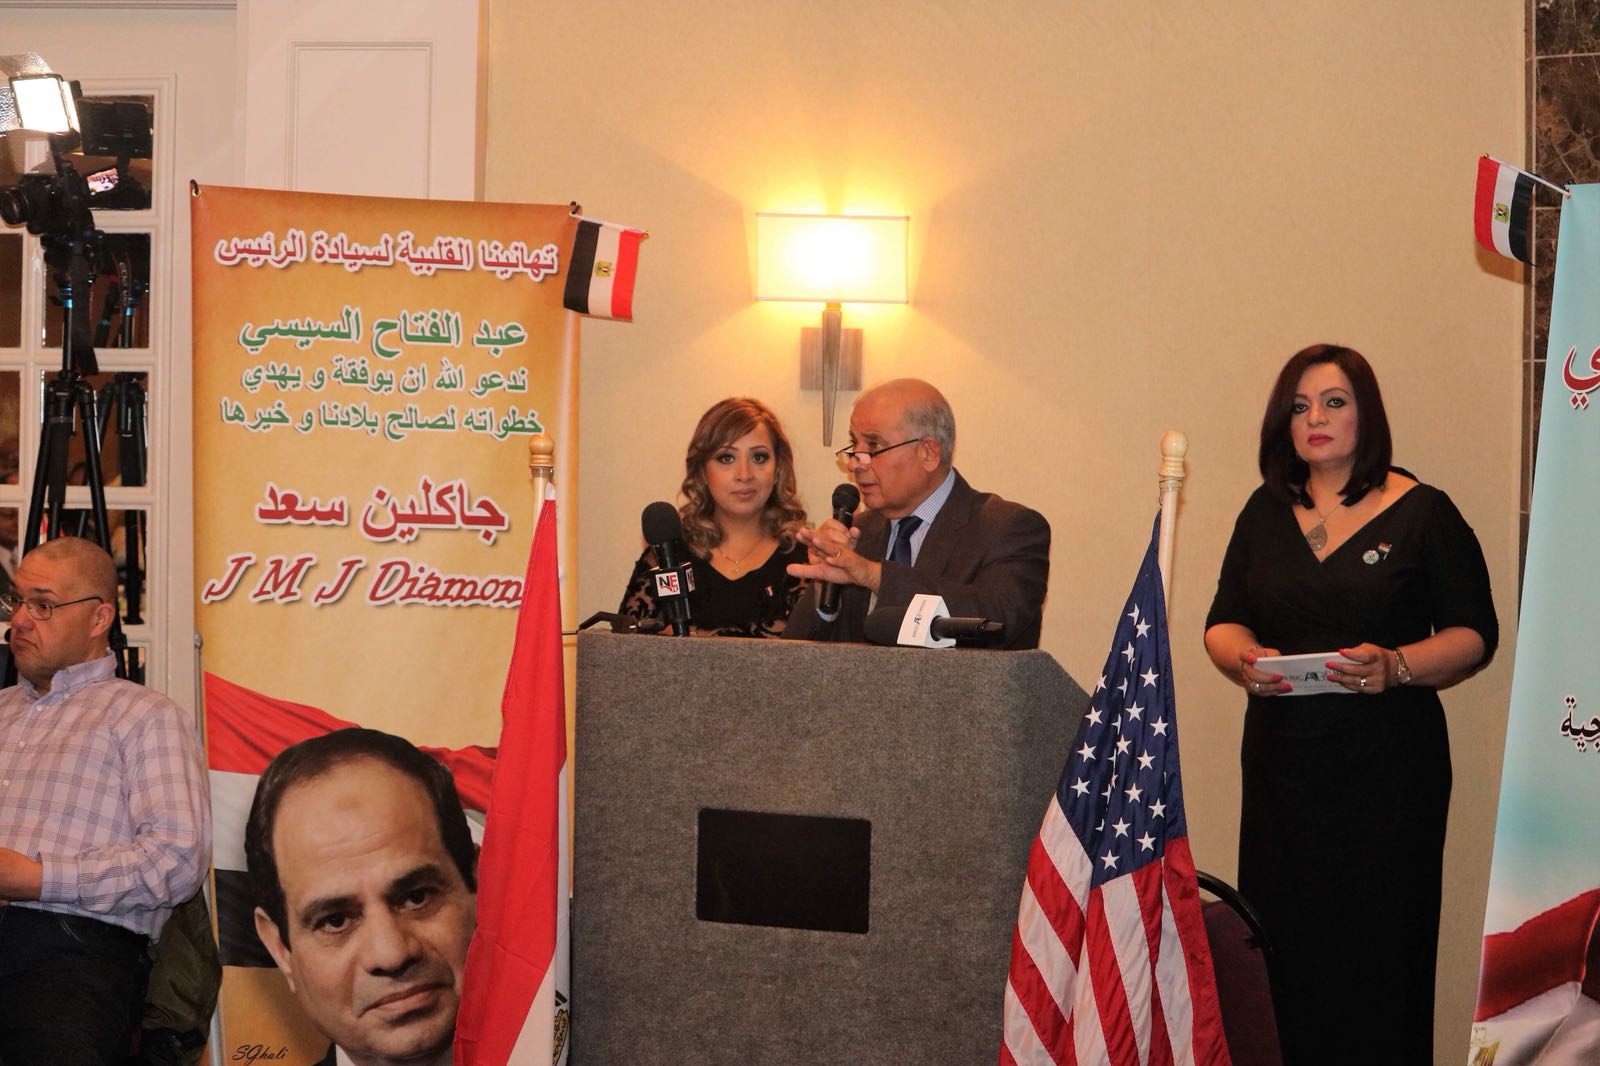   بالصور| الجالية المصرية بالولايات المتحدة تنظم مؤتمرا لدعم الرئيس السيسى